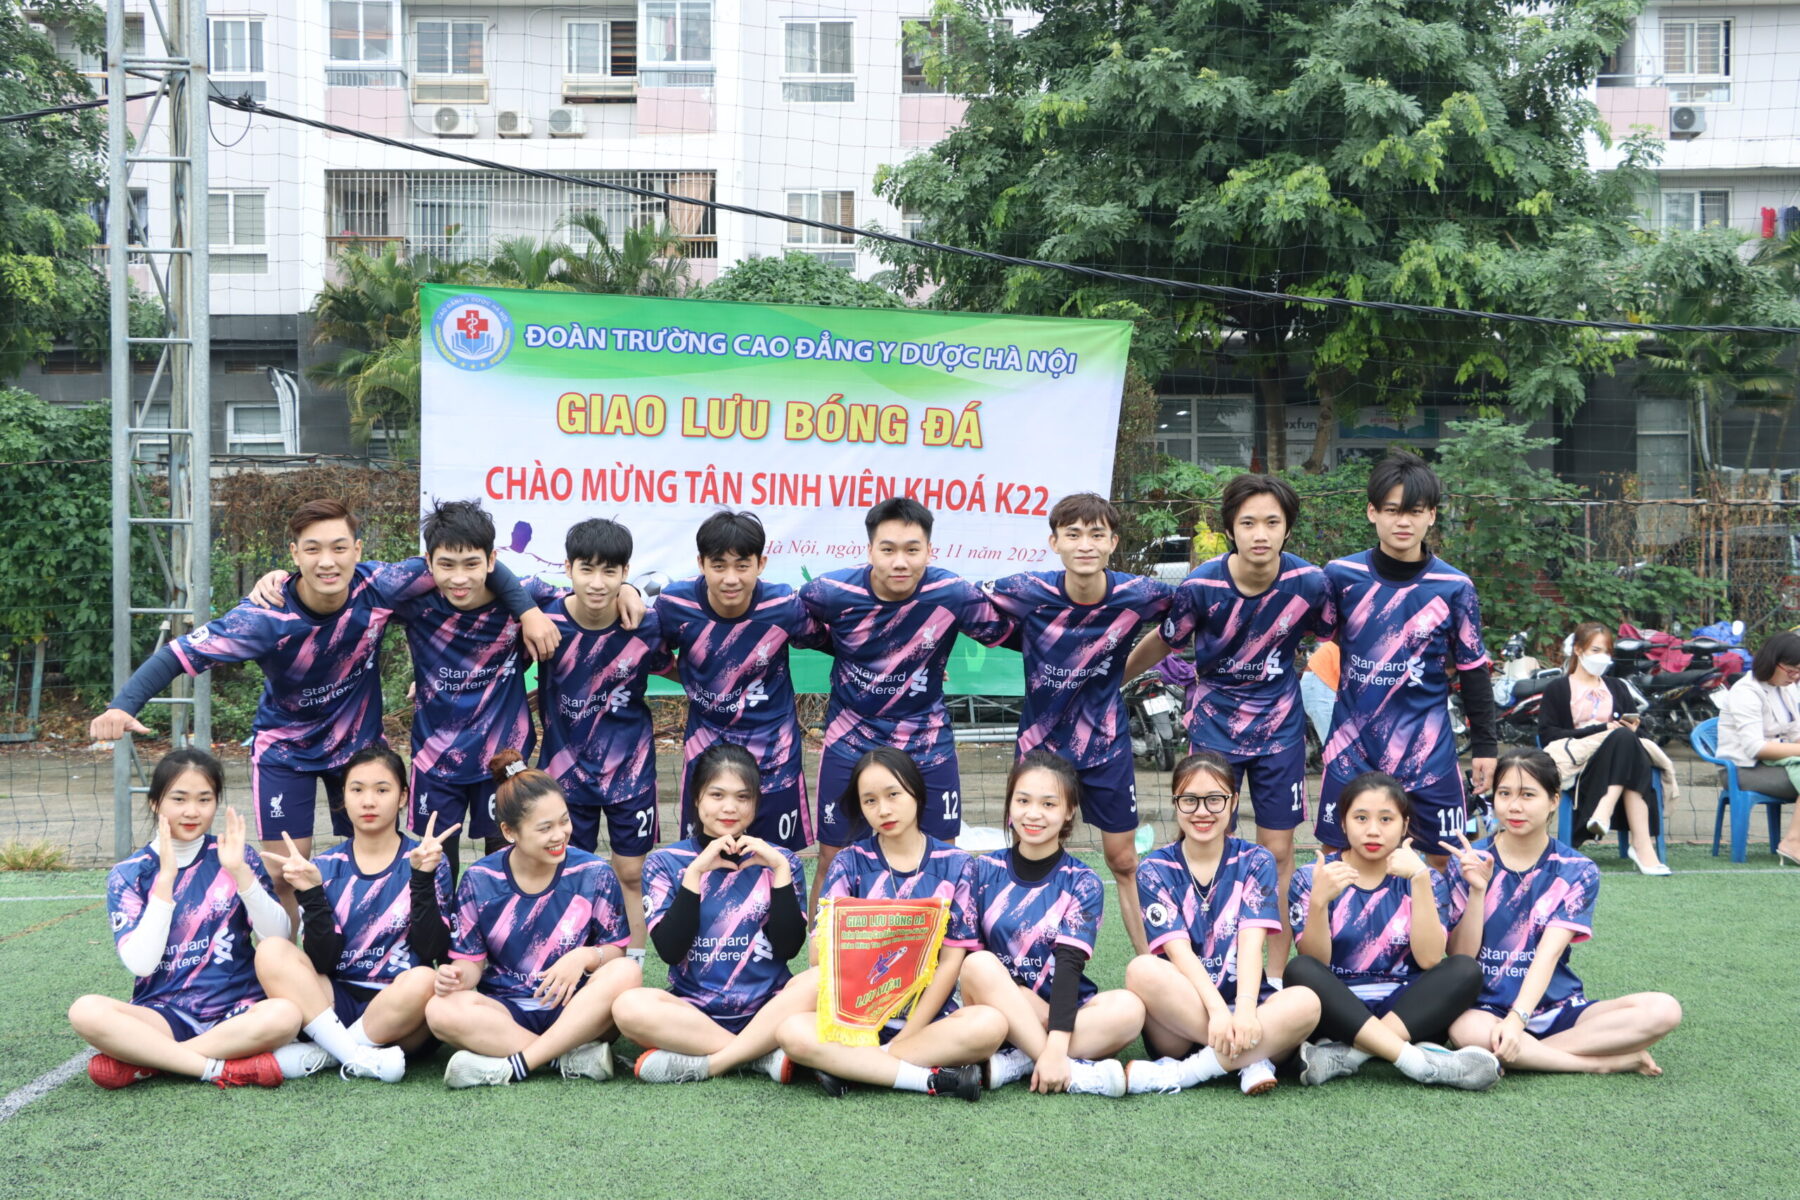 Giao lưu bóng đá chào tân sinh viên khoá K22 Trường Cao đẳng Y Dược Hà Nội